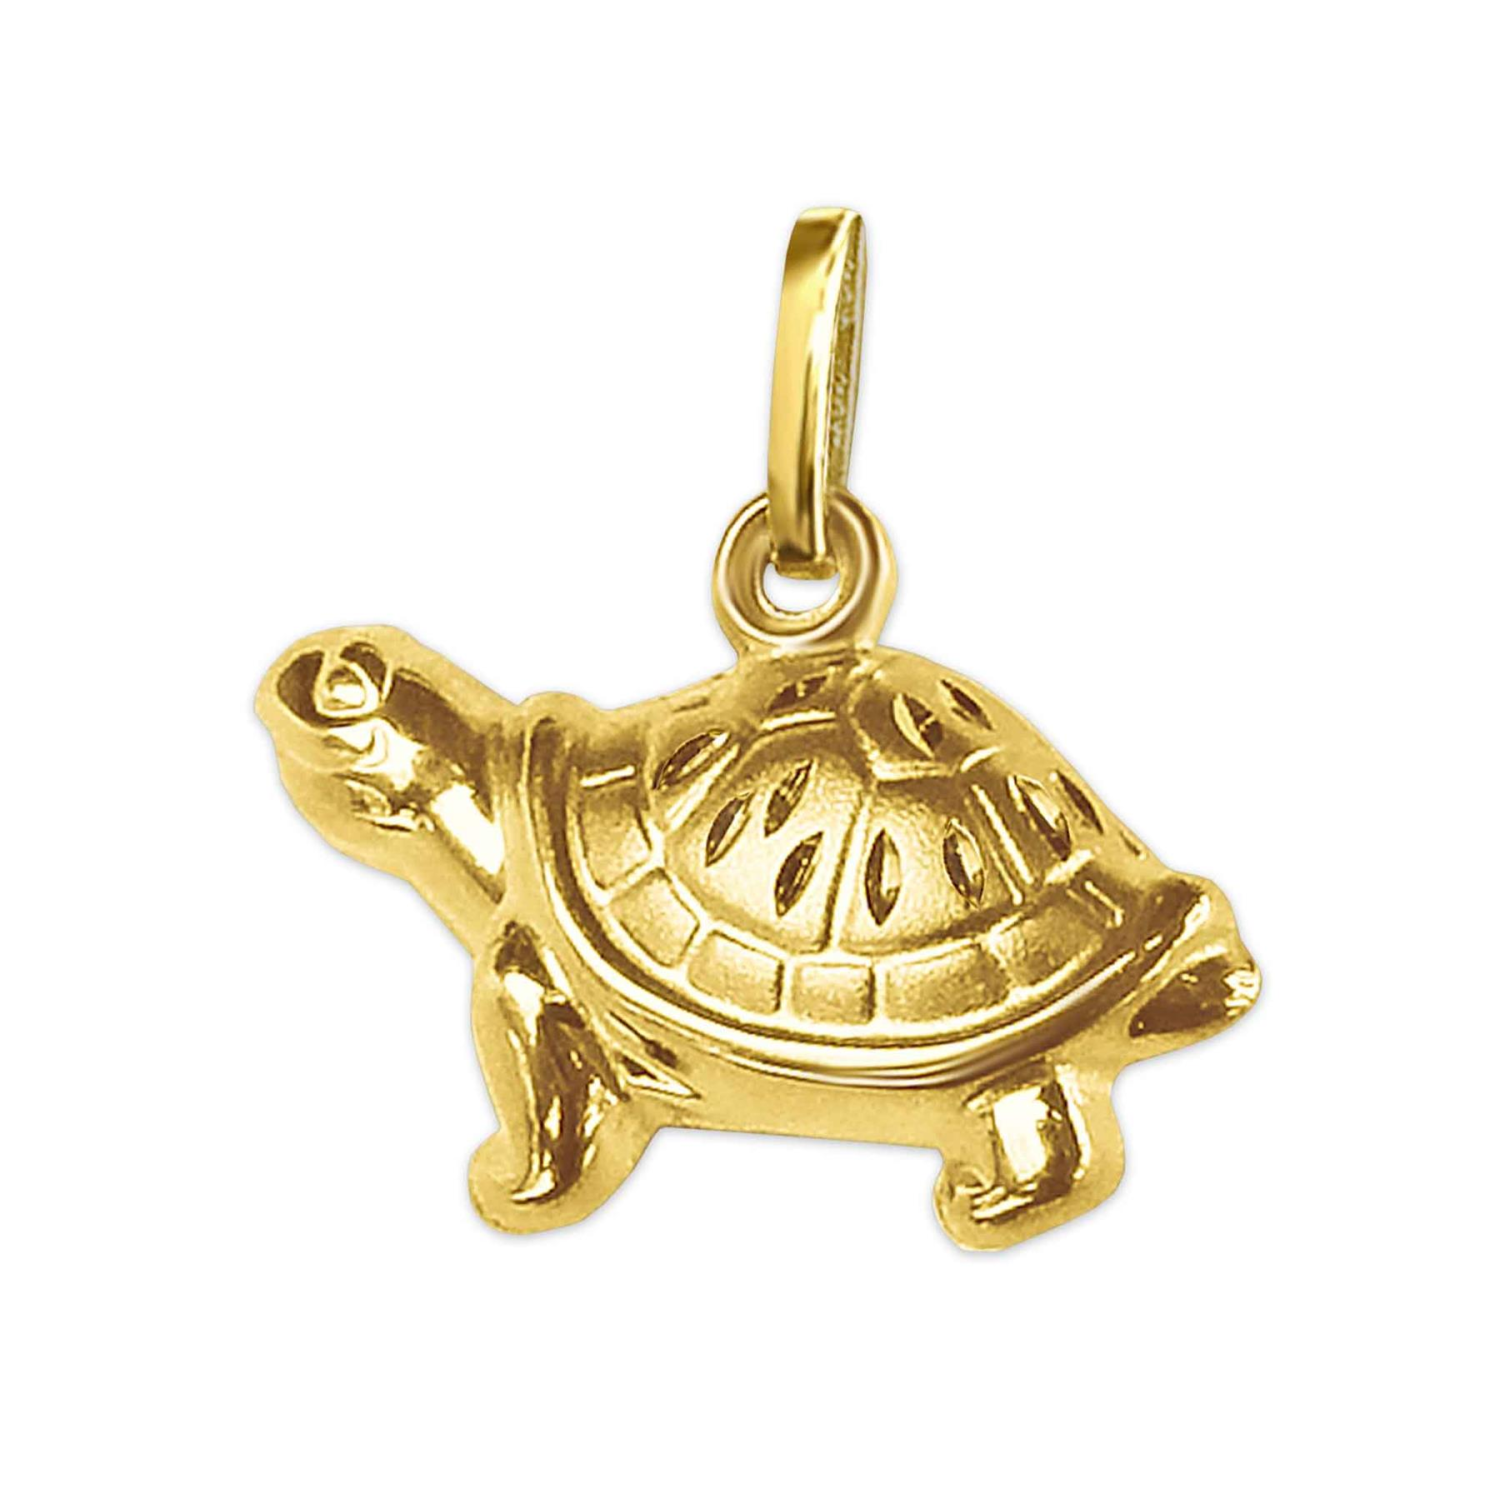 Goldene Schildkröte 15 x 7 mm figürliche Form, eine Seite glänzend, die andere matt diamantiert 333 GOLD 8 KARAT